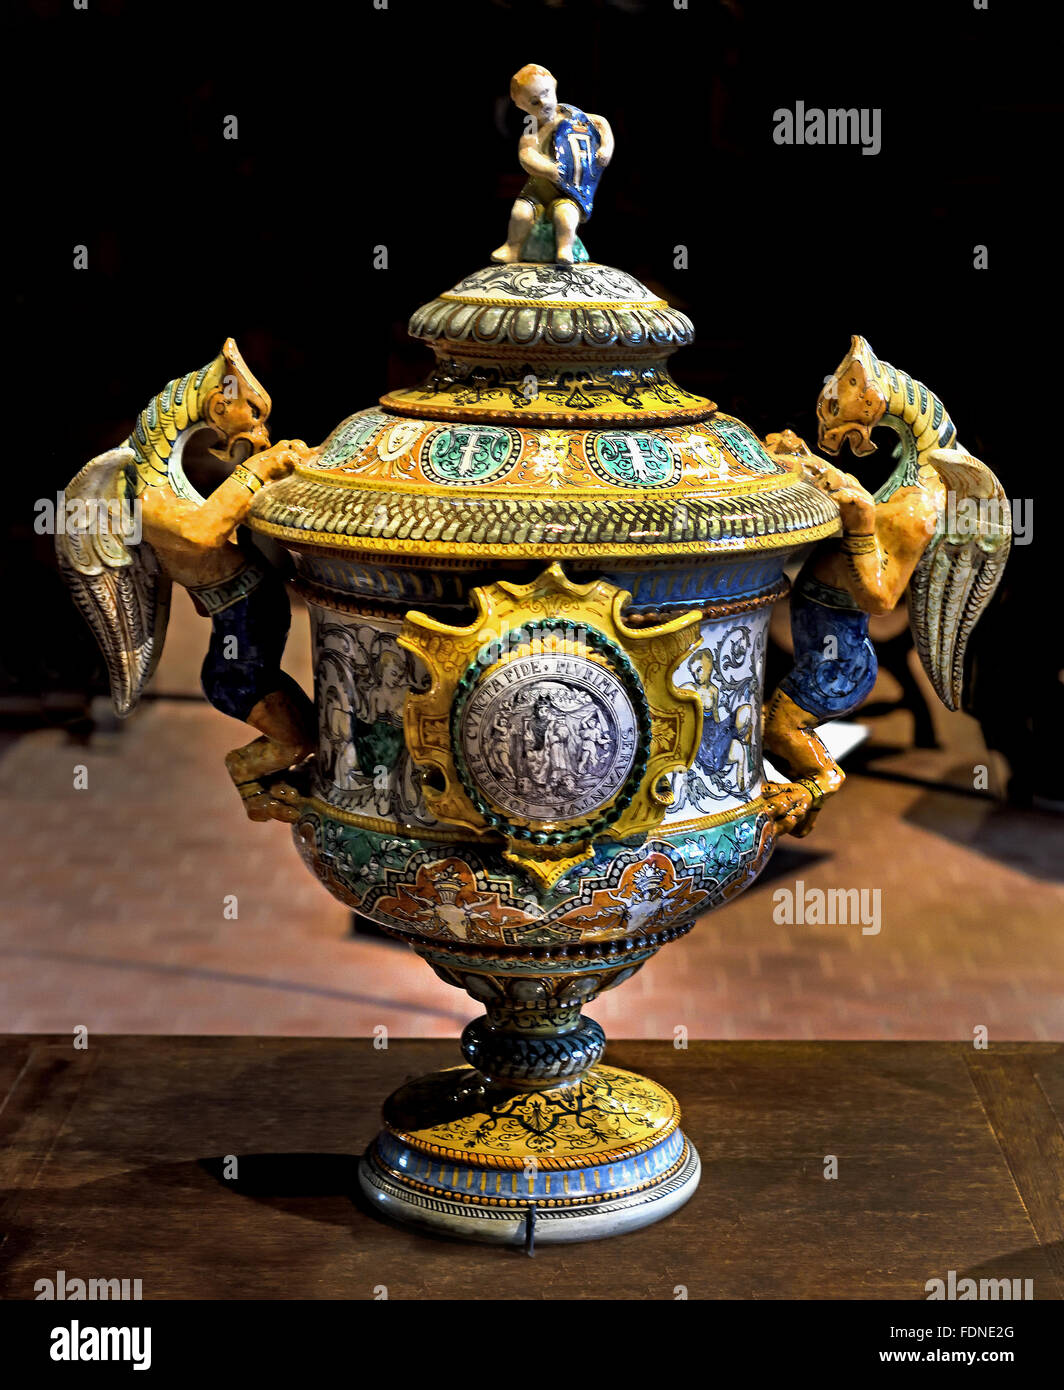 Überdachte Vase mit zwei Händeln von Ulysse Besnard 1826-1899 Faience Blois Frankreich Französisch ( Chateau de Blois ) Stockfoto